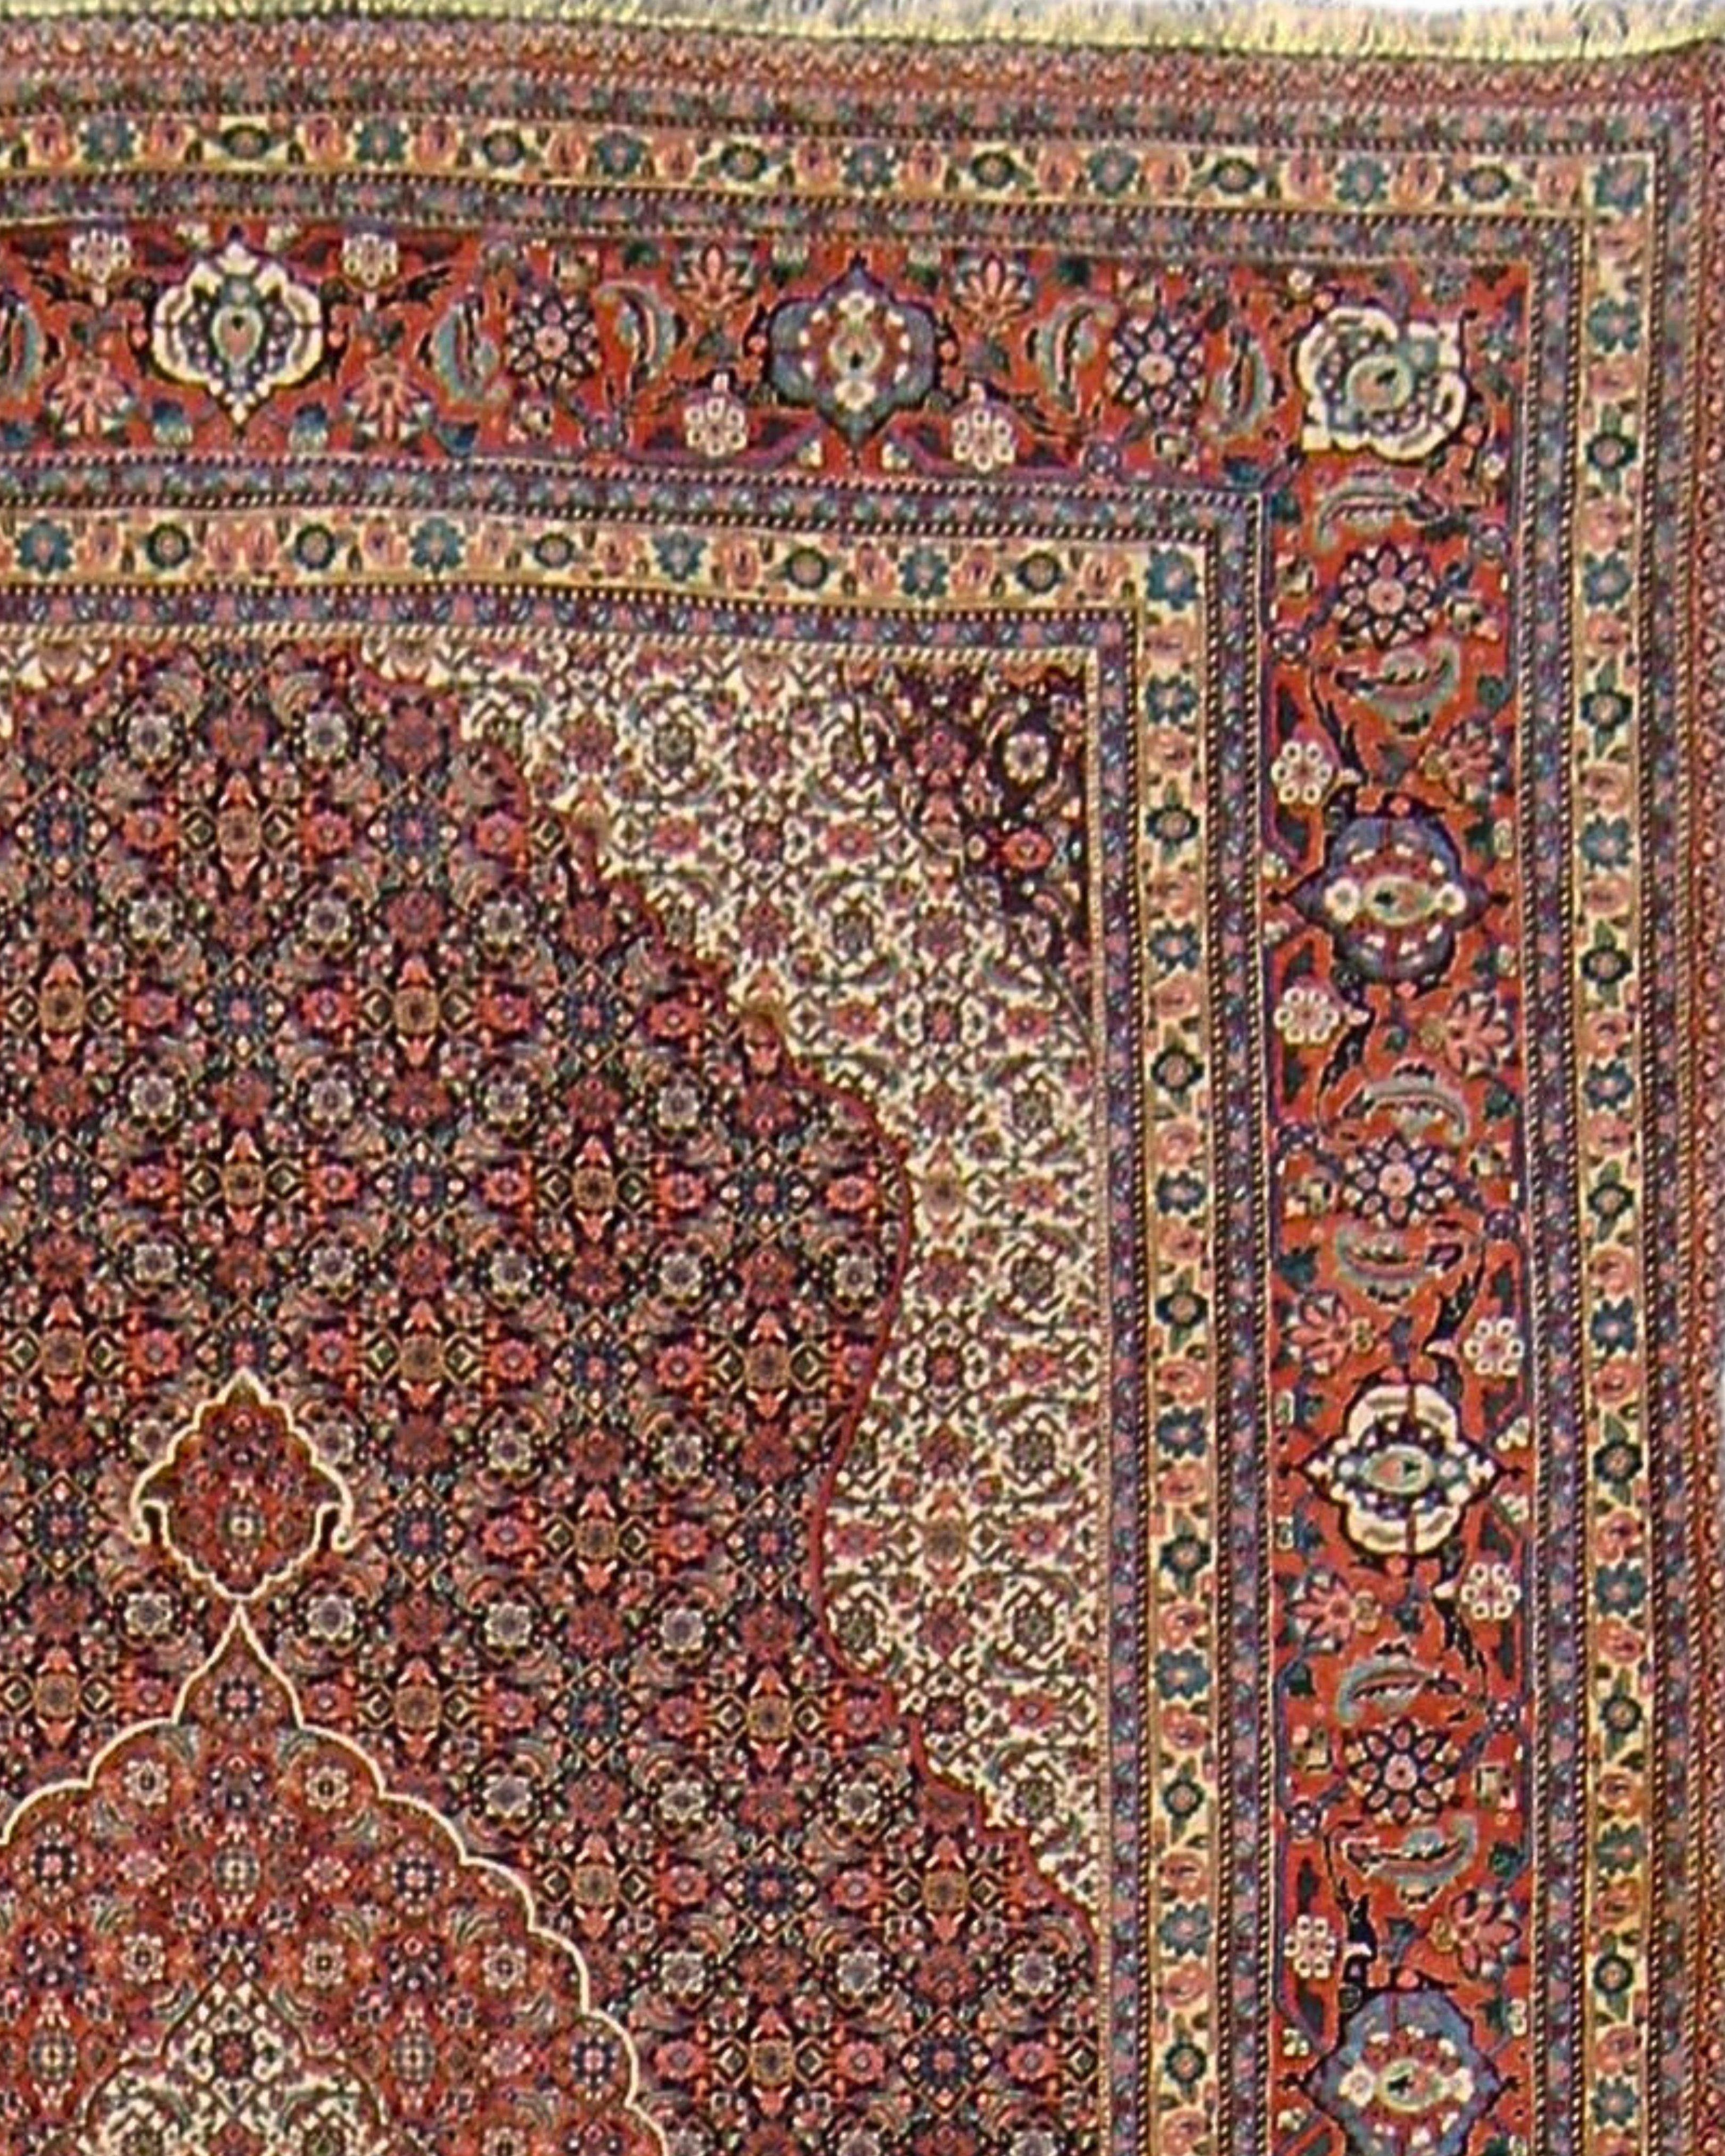 Alter persischer Täbris-Teppich, um 1970

Ausgezeichneter Zustand.

Zusätzliche Informationen:
Abmessungen: 6'7